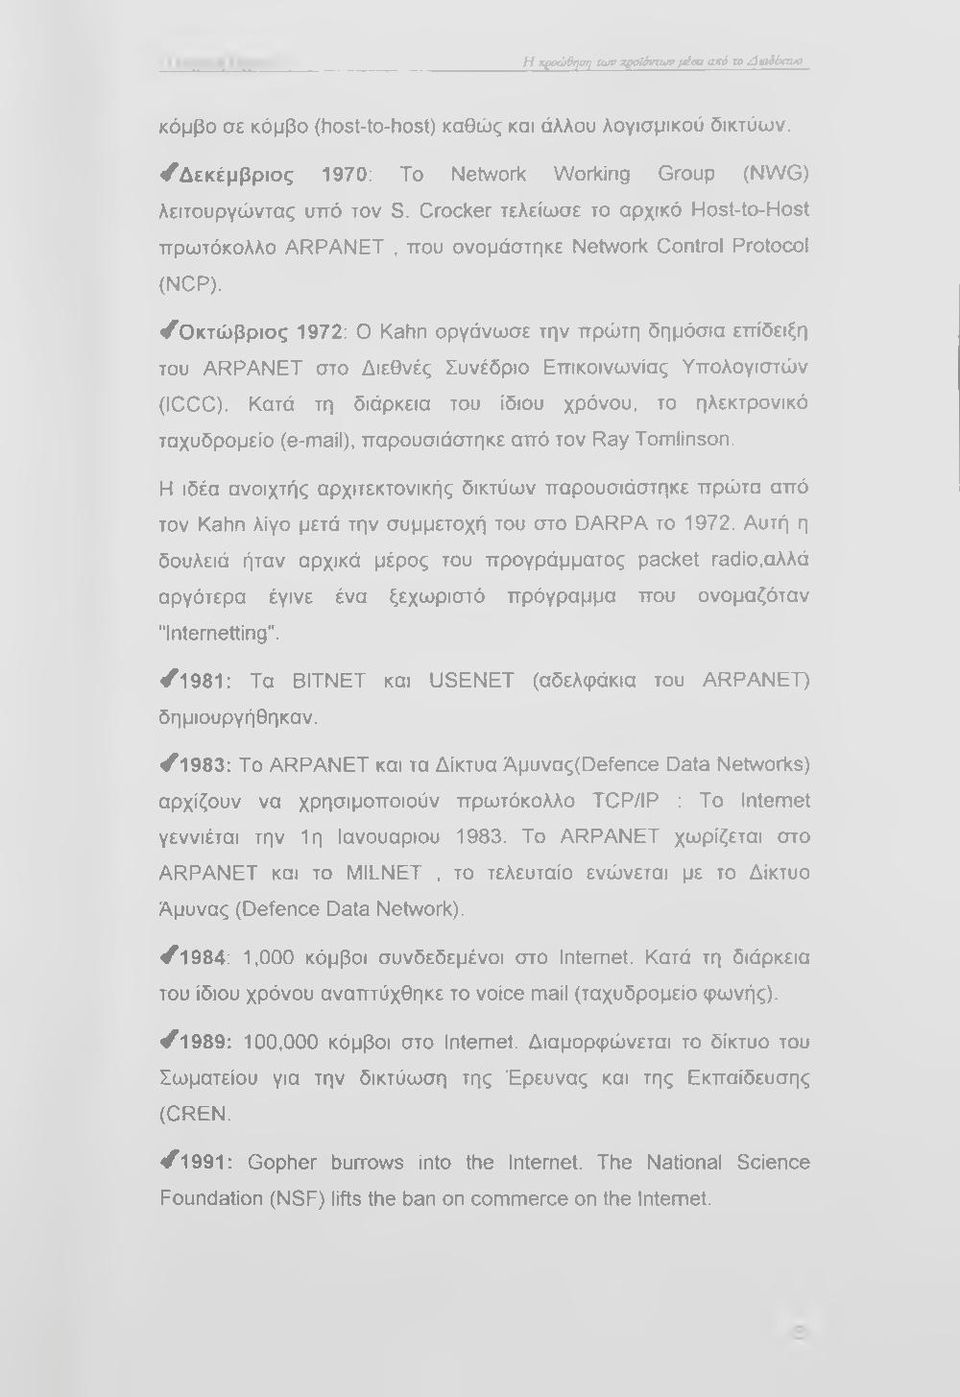 /Ο κτώ β ρ ιο ς 1972; Ο Kahn οργάνωσε την πρώτη δημόσια επίδειξη του ARPANET στο Διεθνές Συνέδριο Επικοινωνίας Υπολογιστών (ICCC).